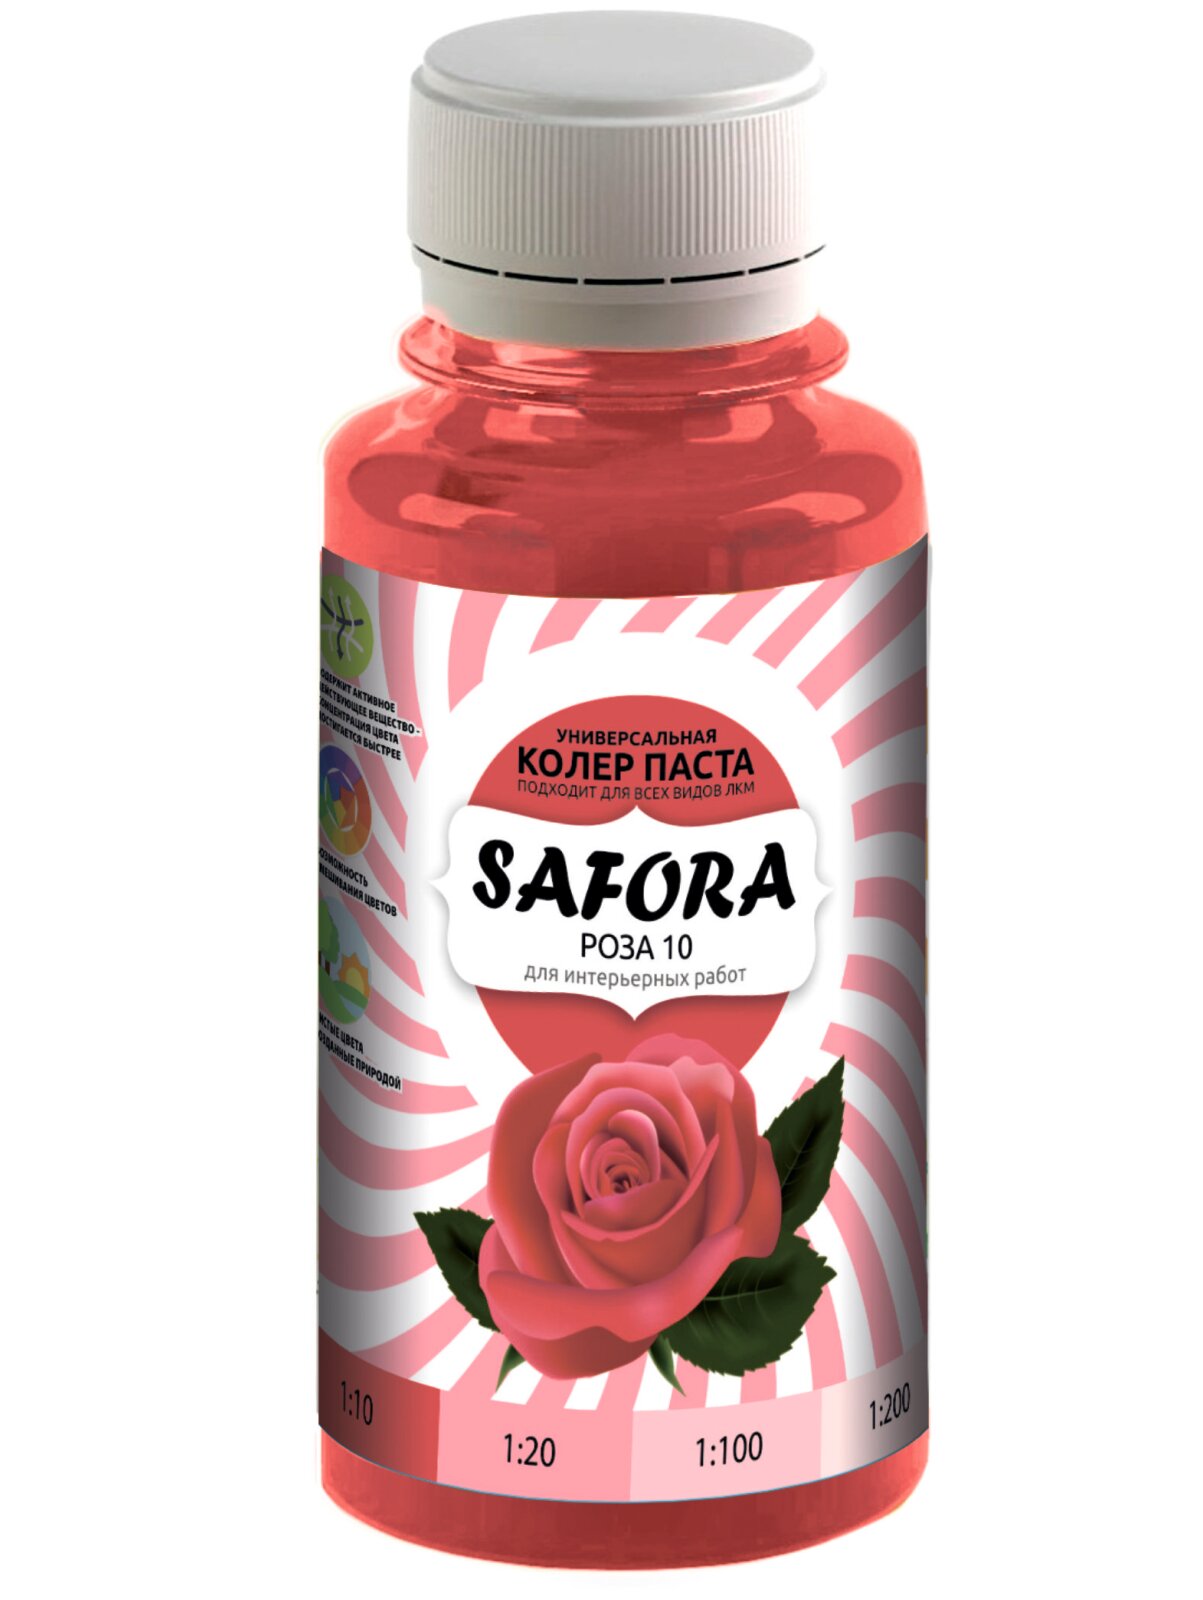 Колеровочная паста 10 роза, колер красный SAFORA 100мл, колер для краски, штукатурки и других материалов, колер паста